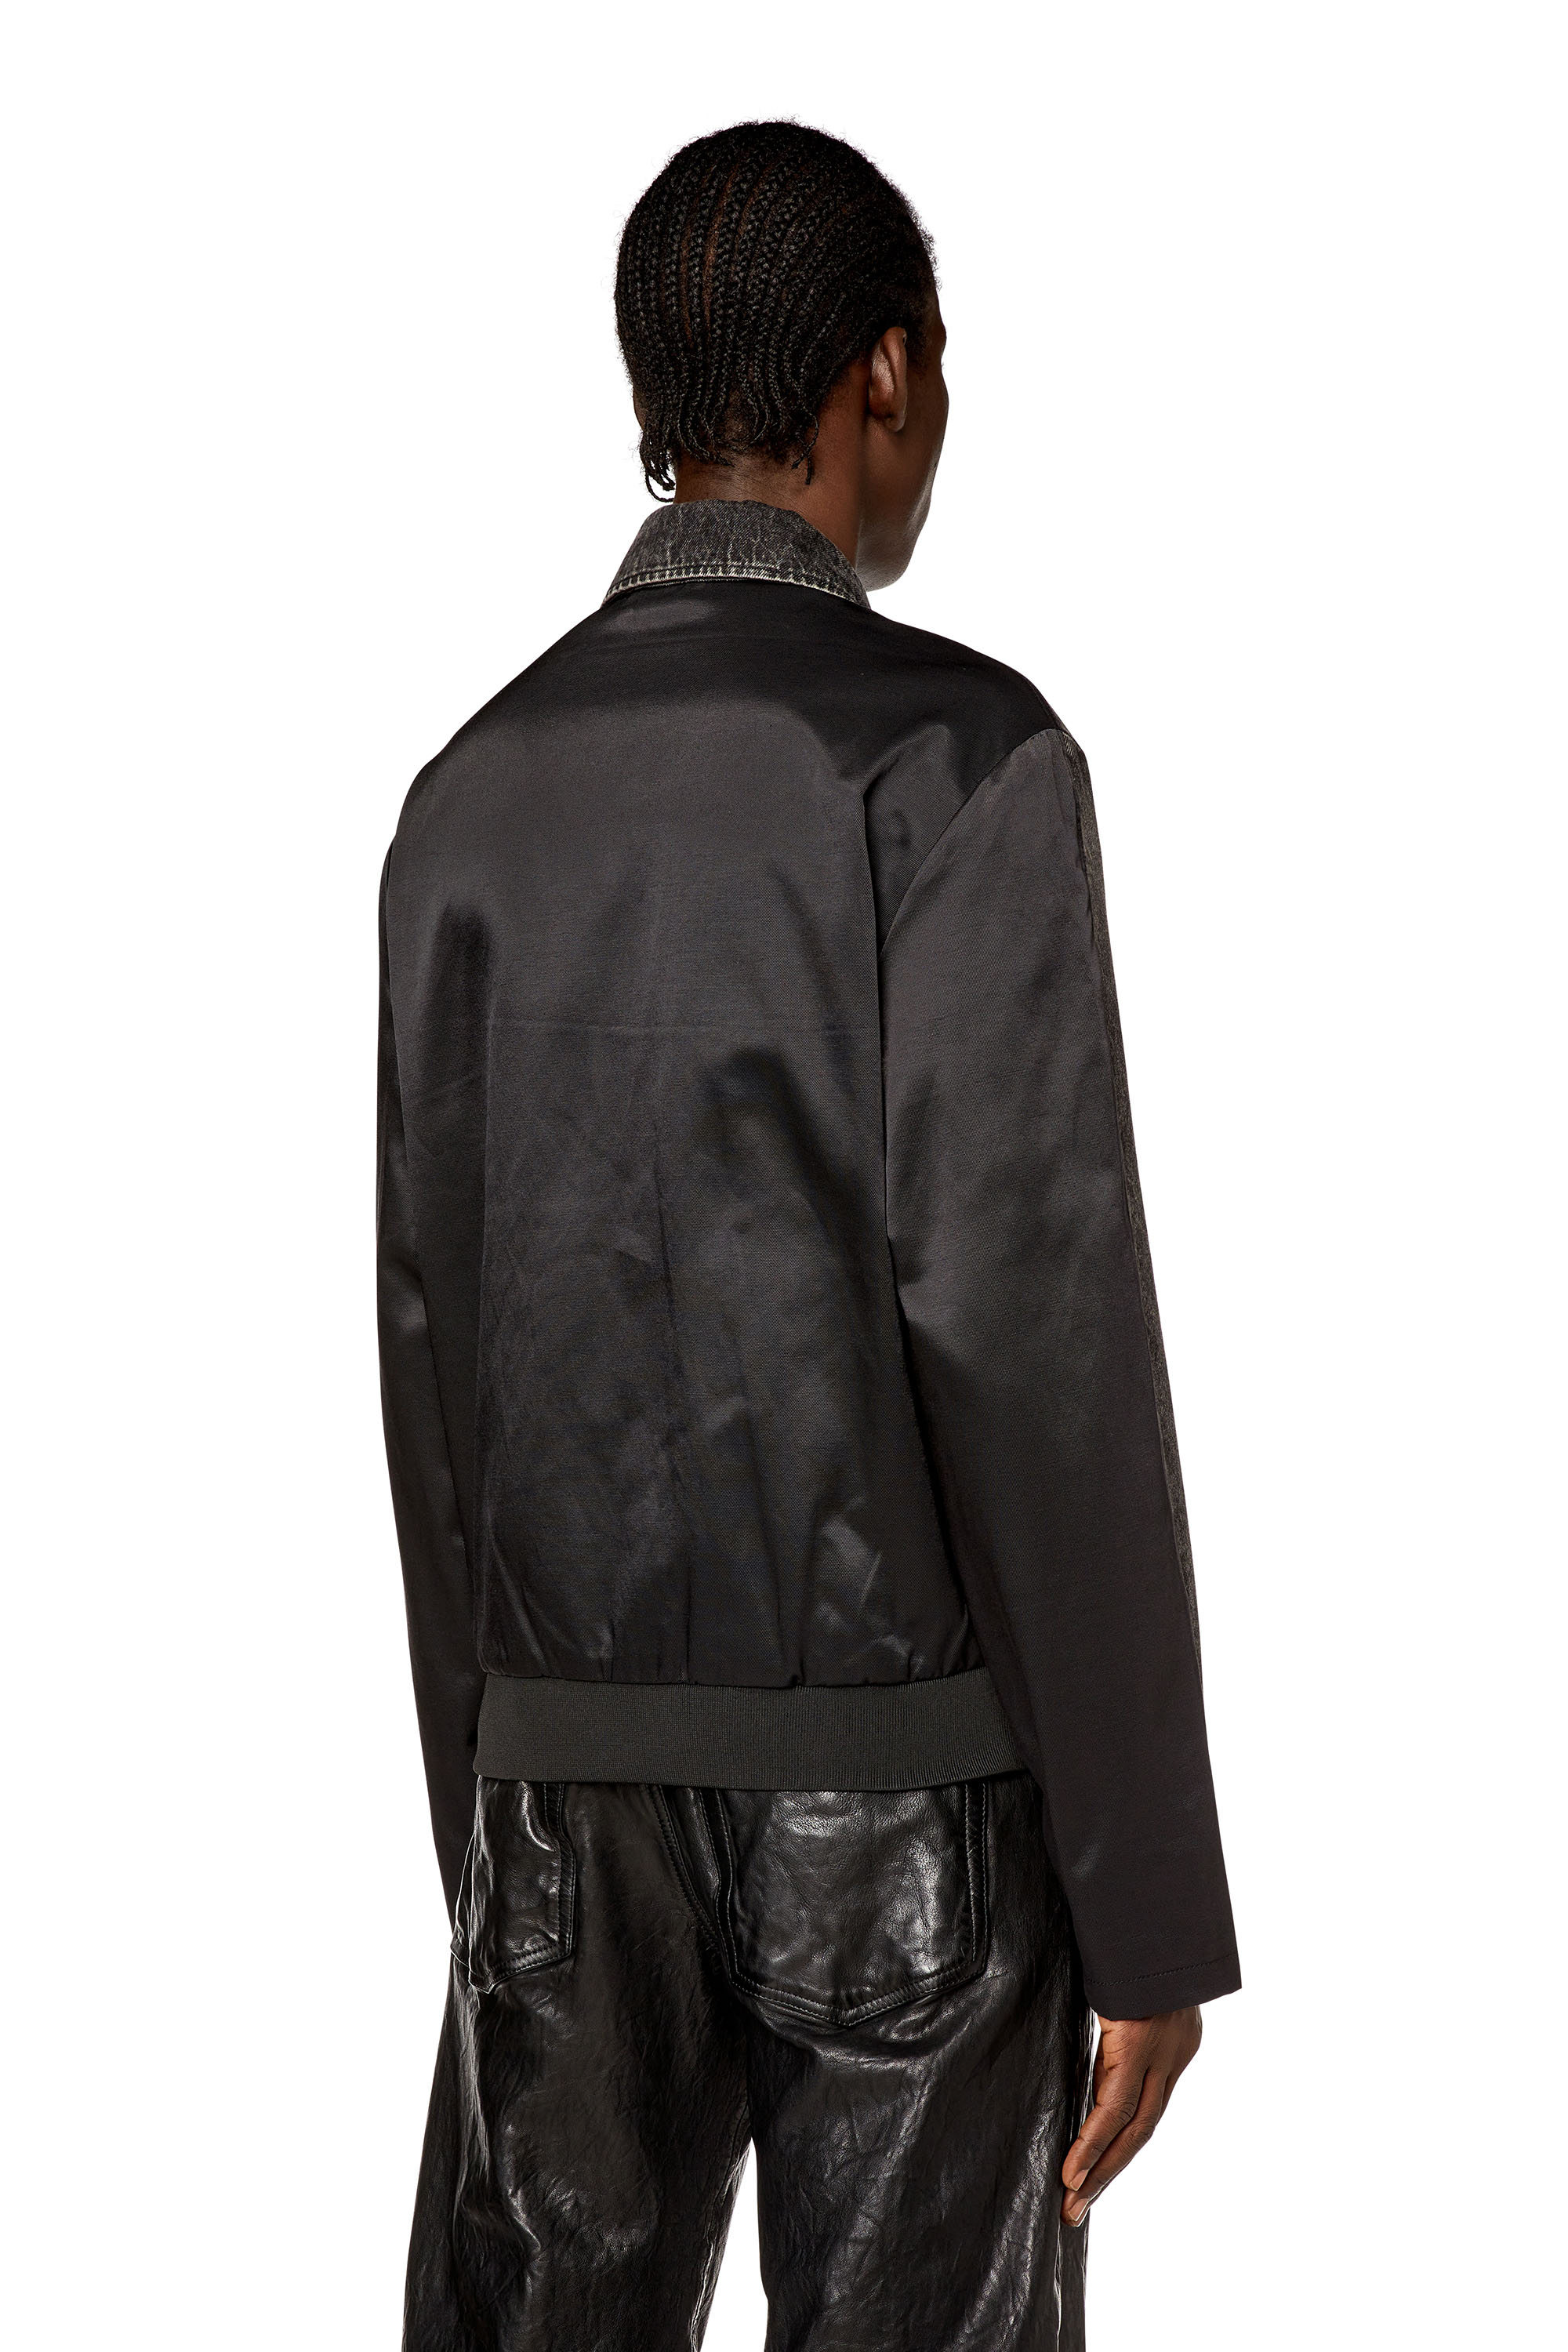 Diesel - J-HARRIS, Man Hybrid jacket in denim and twill in Black - Image 4